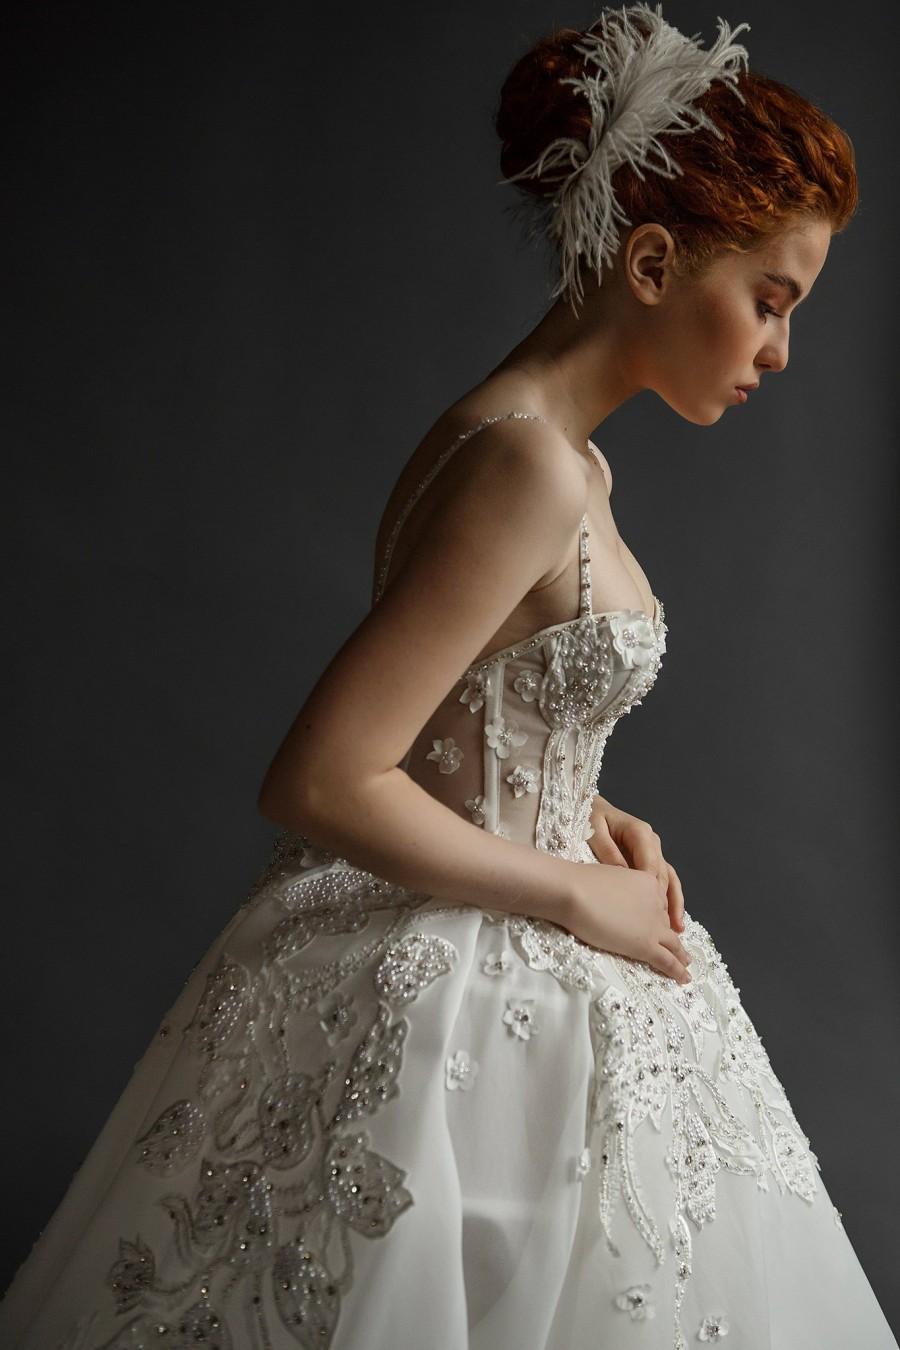 زفاف - Wedding dress//ARLINE/Ball  gown,couture wedding dress, lace bridal gown, beaded lace top, lace bridal gown, beautifull summer gown